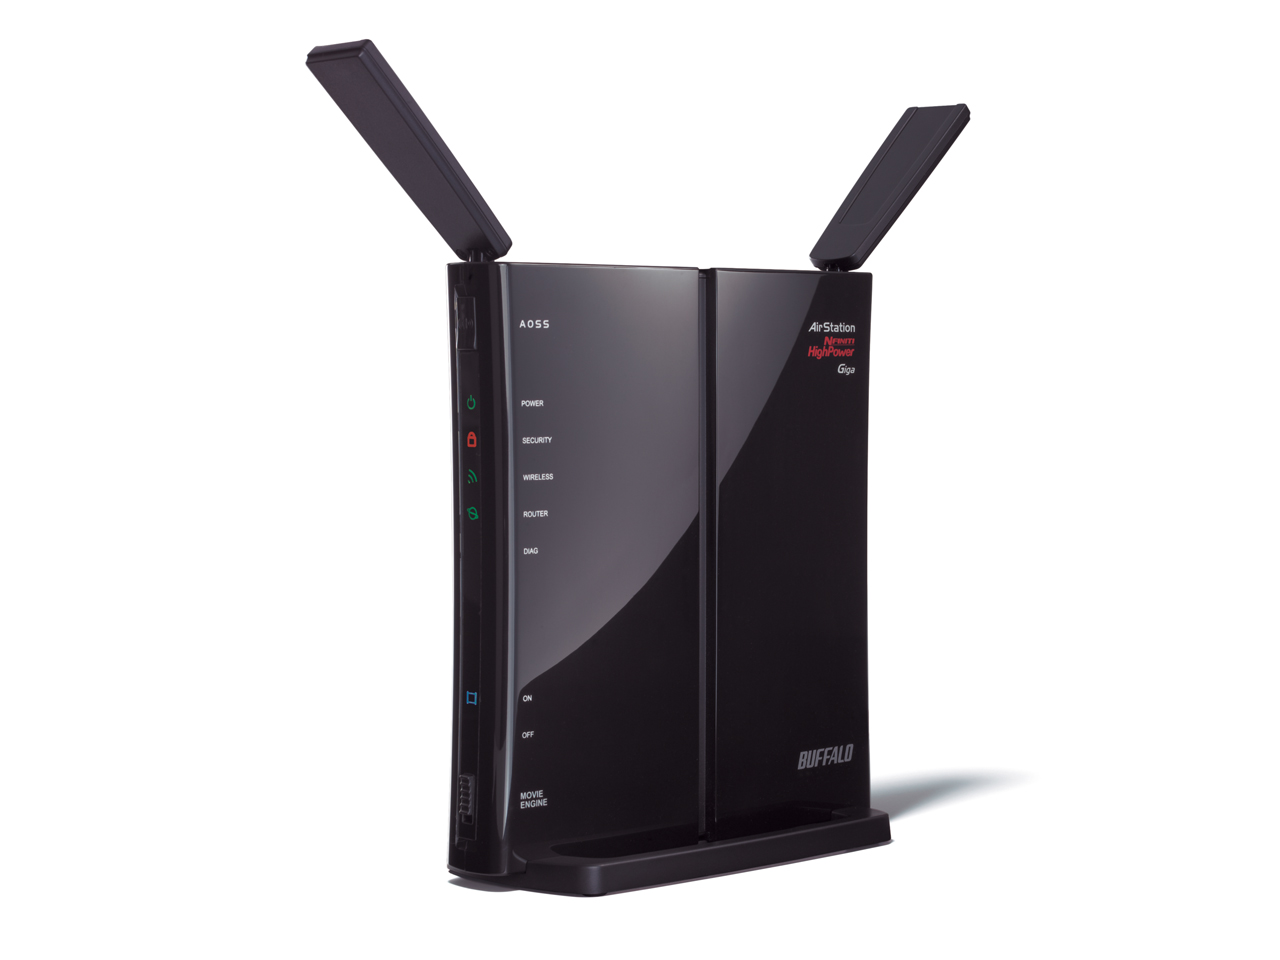 Immagine pubblicata in relazione al seguente contenuto: Buffalo lancia il router wireless DWR-HP-G300NH - HSDPA Ready | Nome immagine: news11557_2.jpg